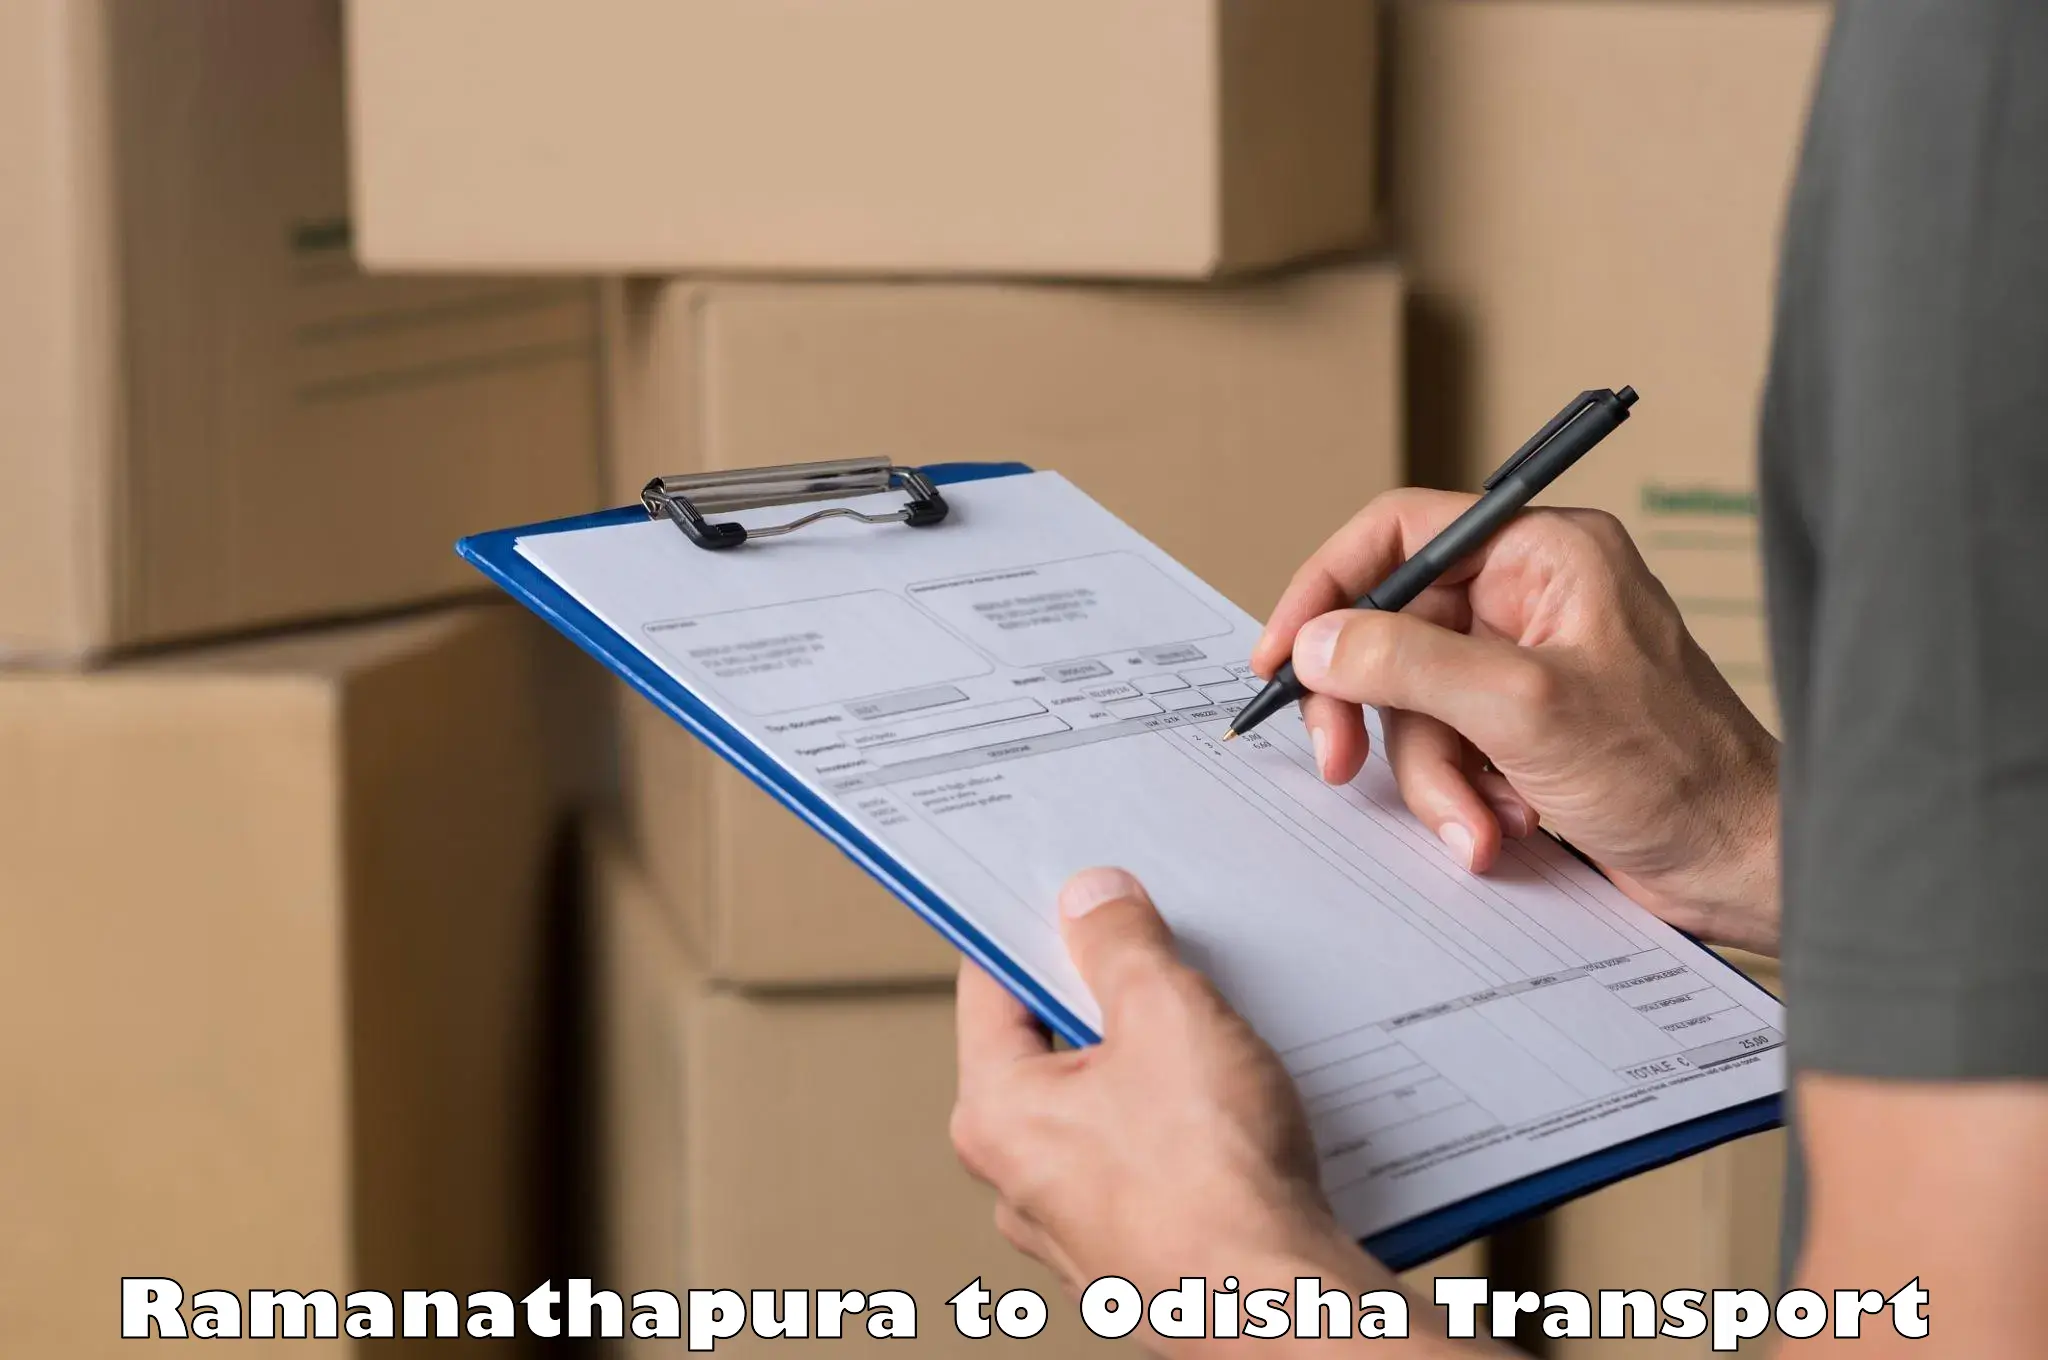 Shipping partner Ramanathapura to Patnagarh